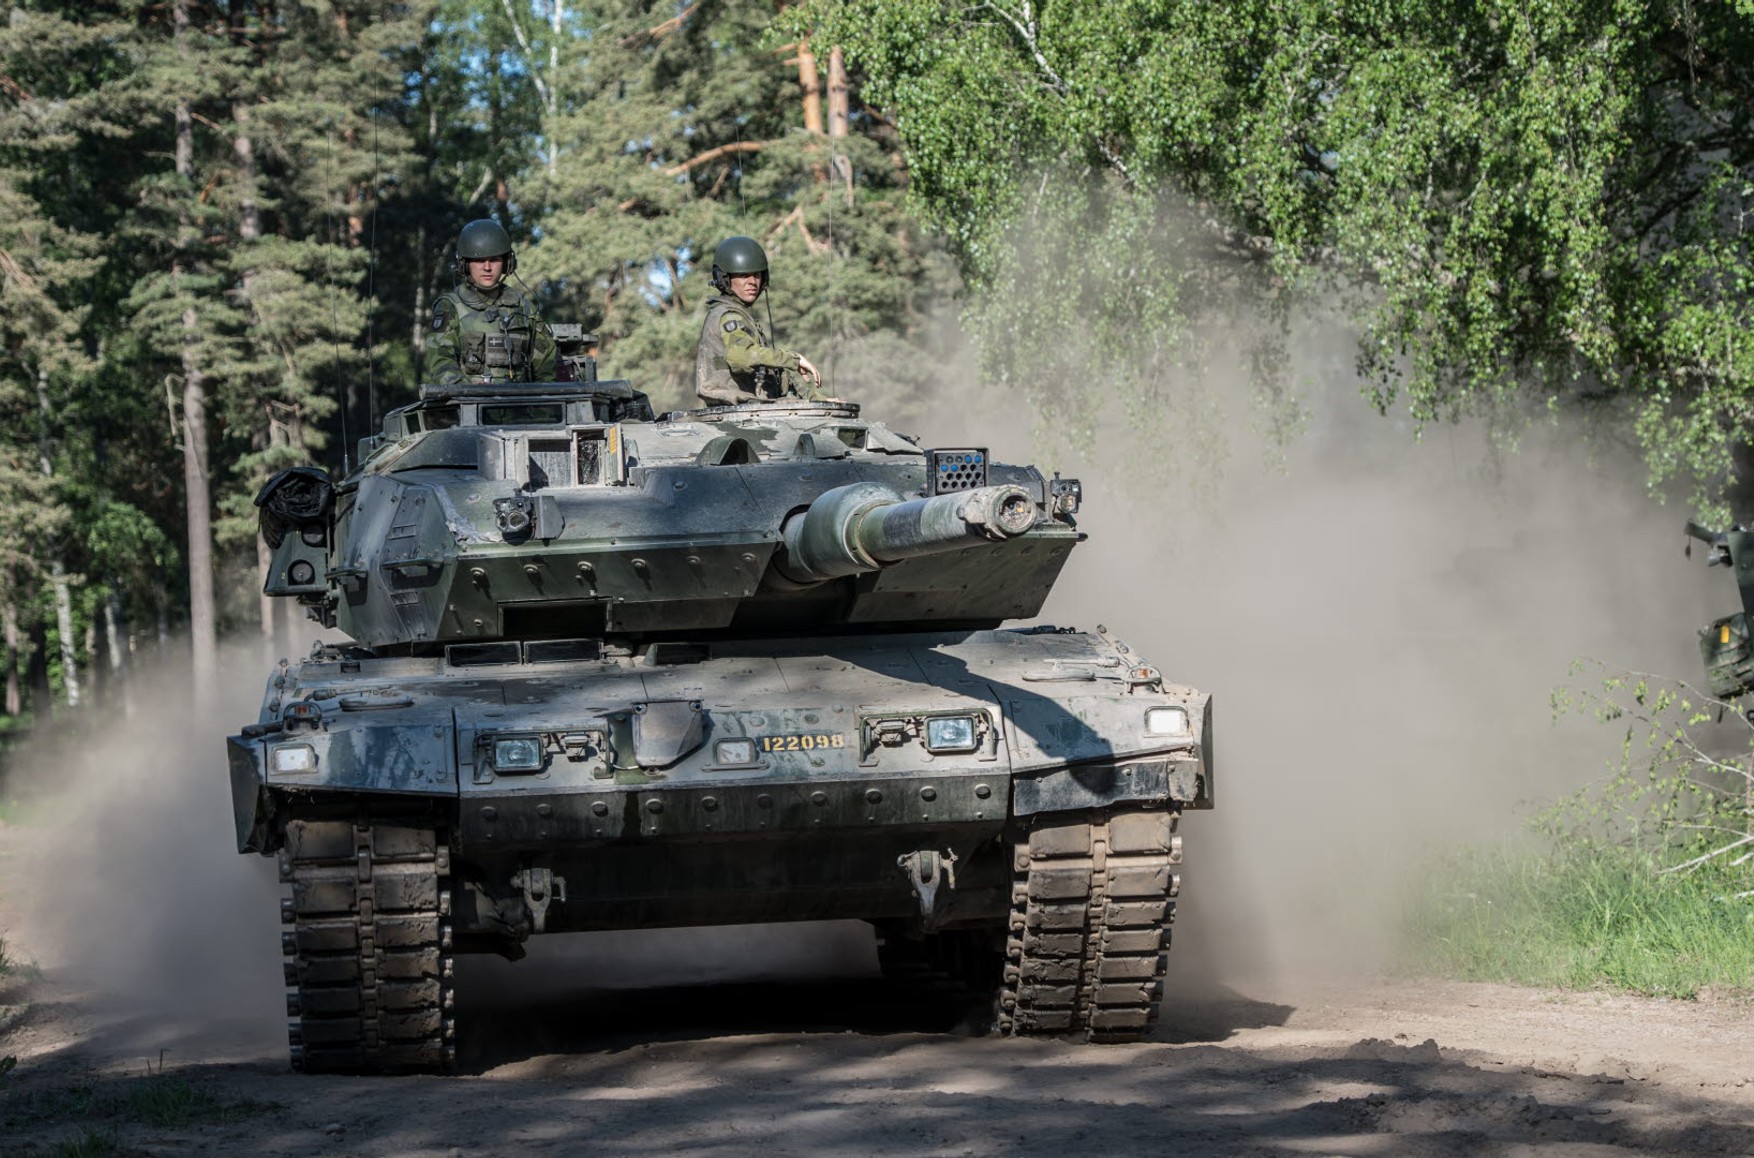 Швеция не исключает поставку Украине танков Stridsvagn 122